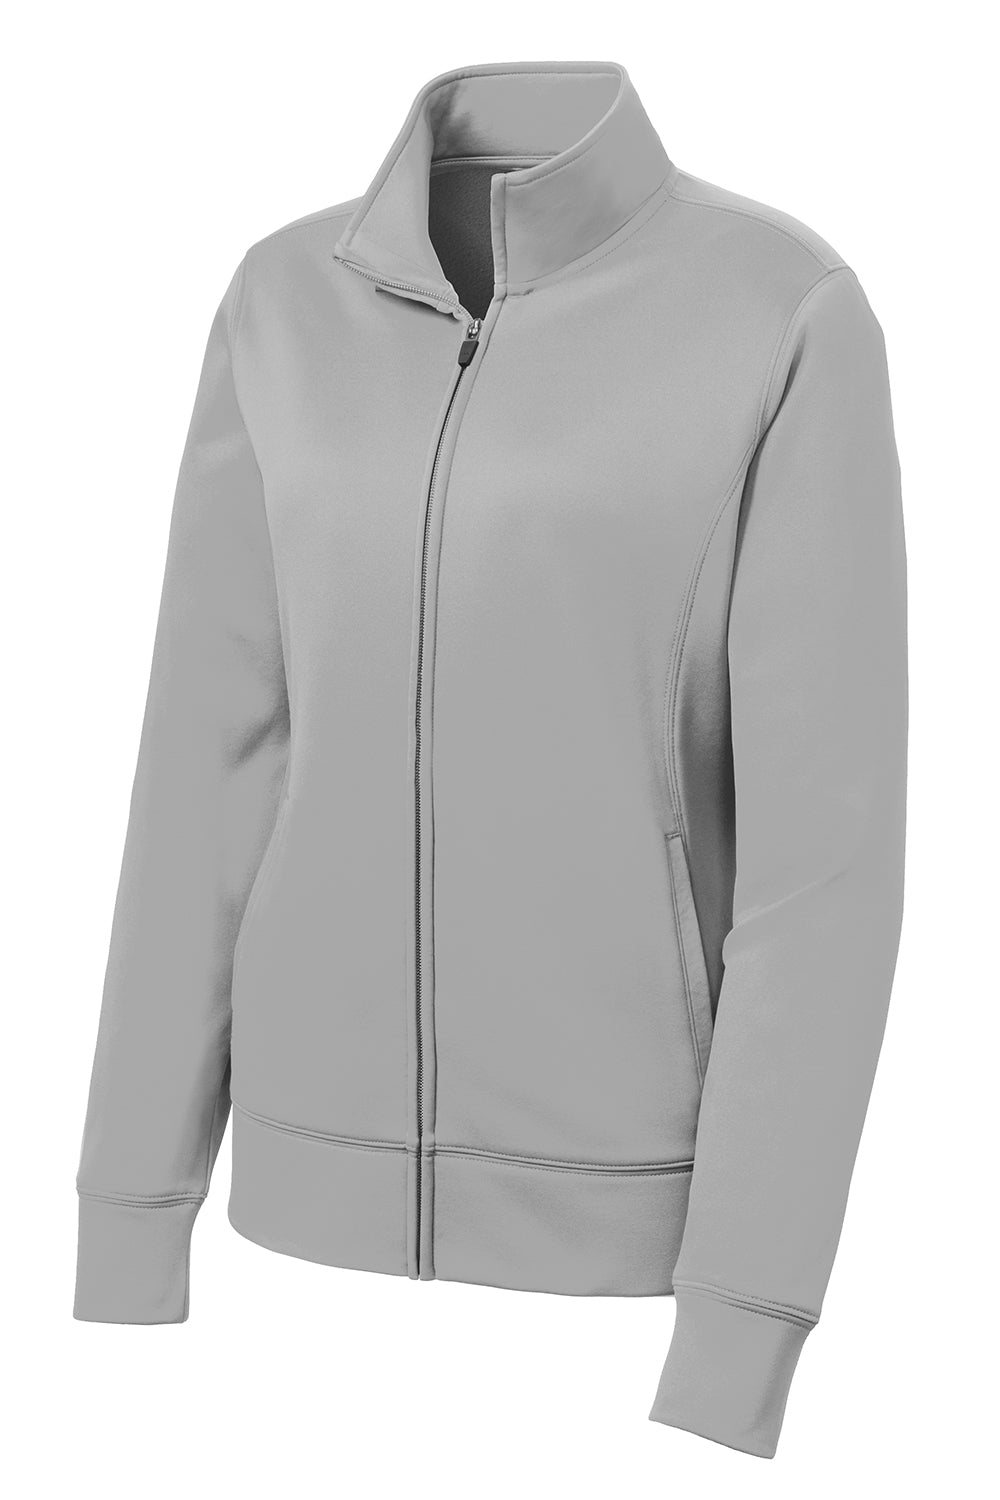 Sport-Tek LST241 Womens Sport-Wick Moisture Wicking Fleece Full Zip Sweatshirt Silver Grey Flat Front